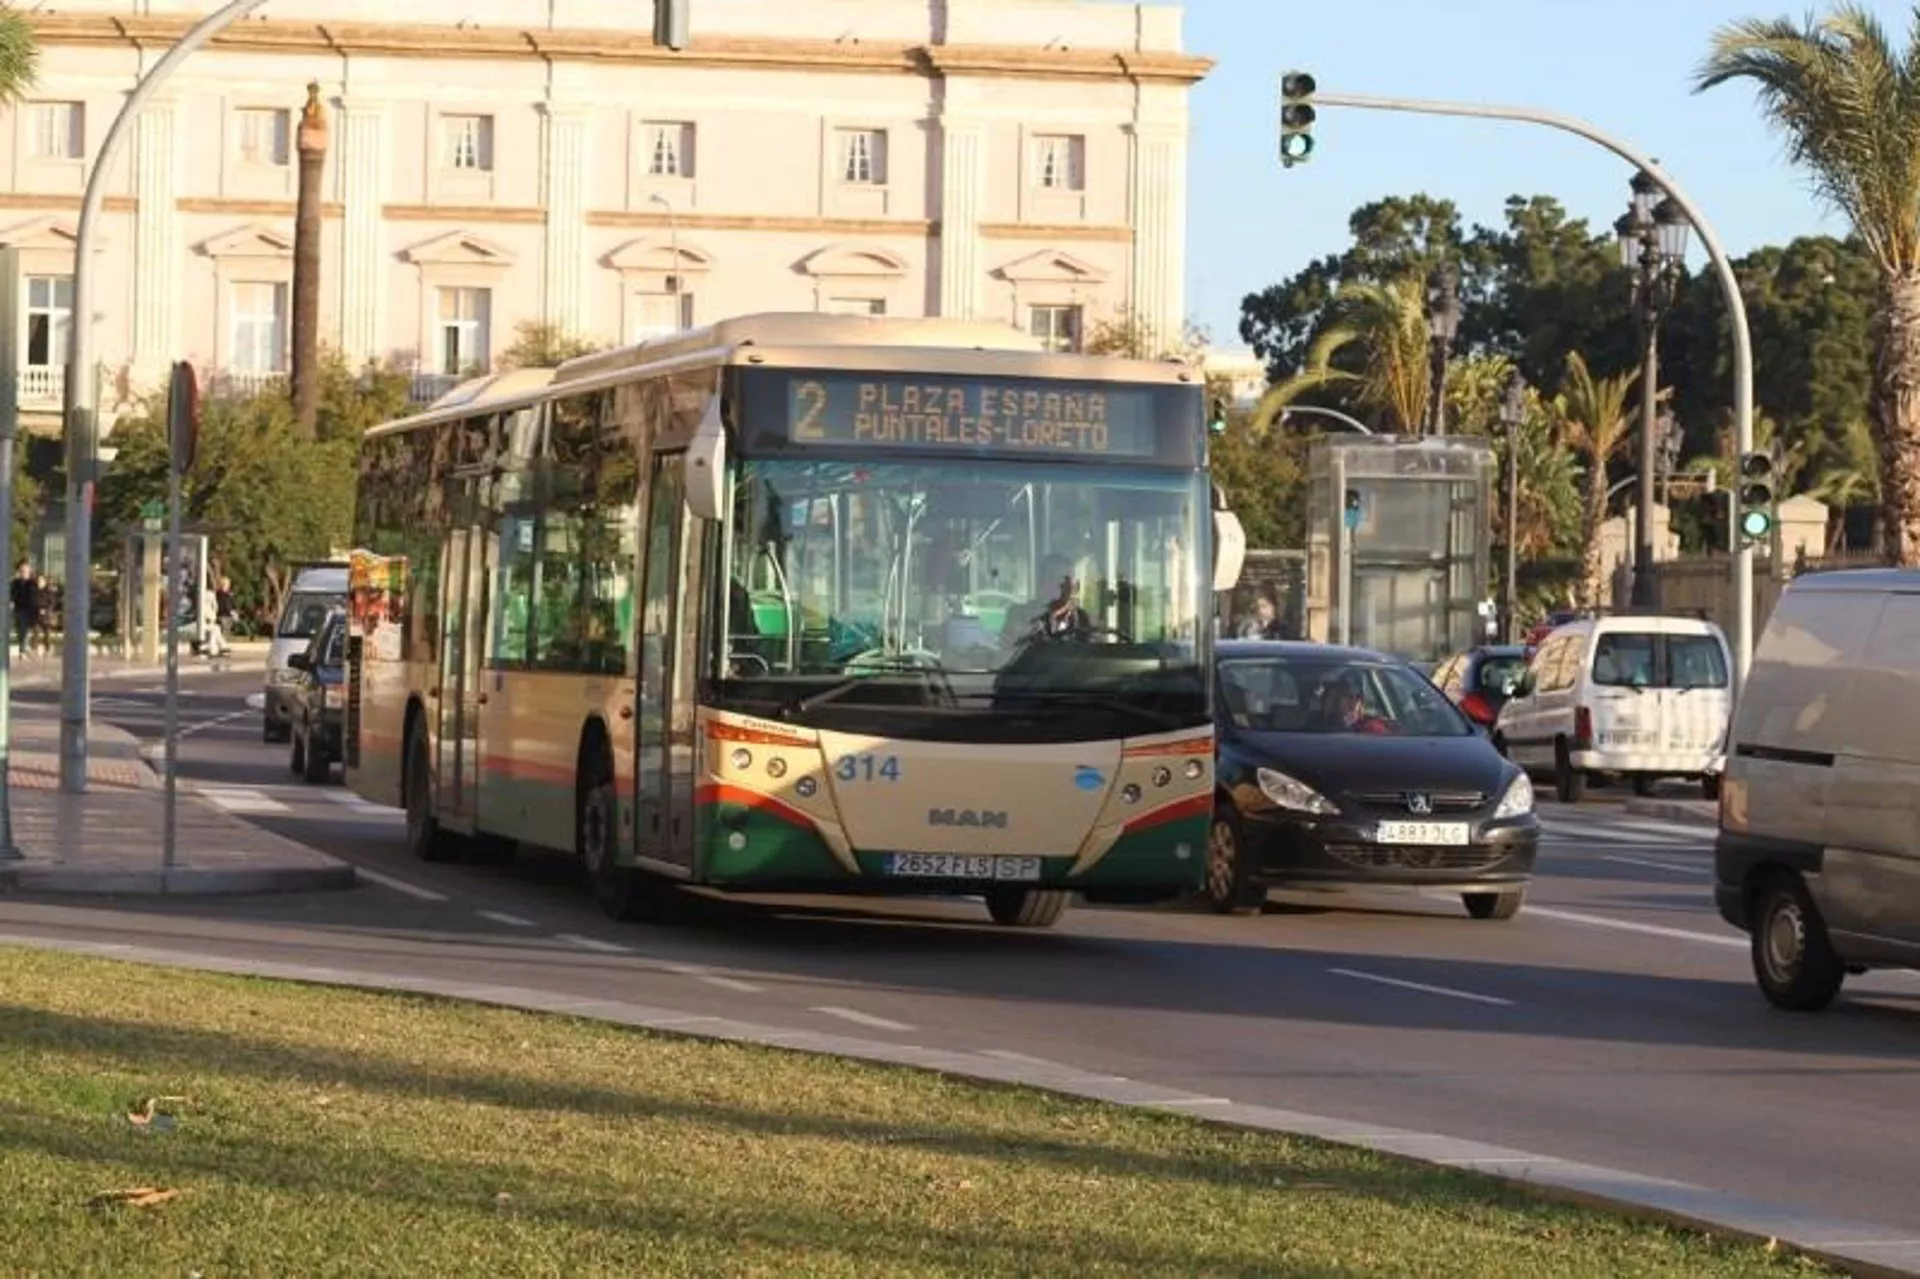 Autobús de transporte urbano de Cádiz en una imagen de archivo